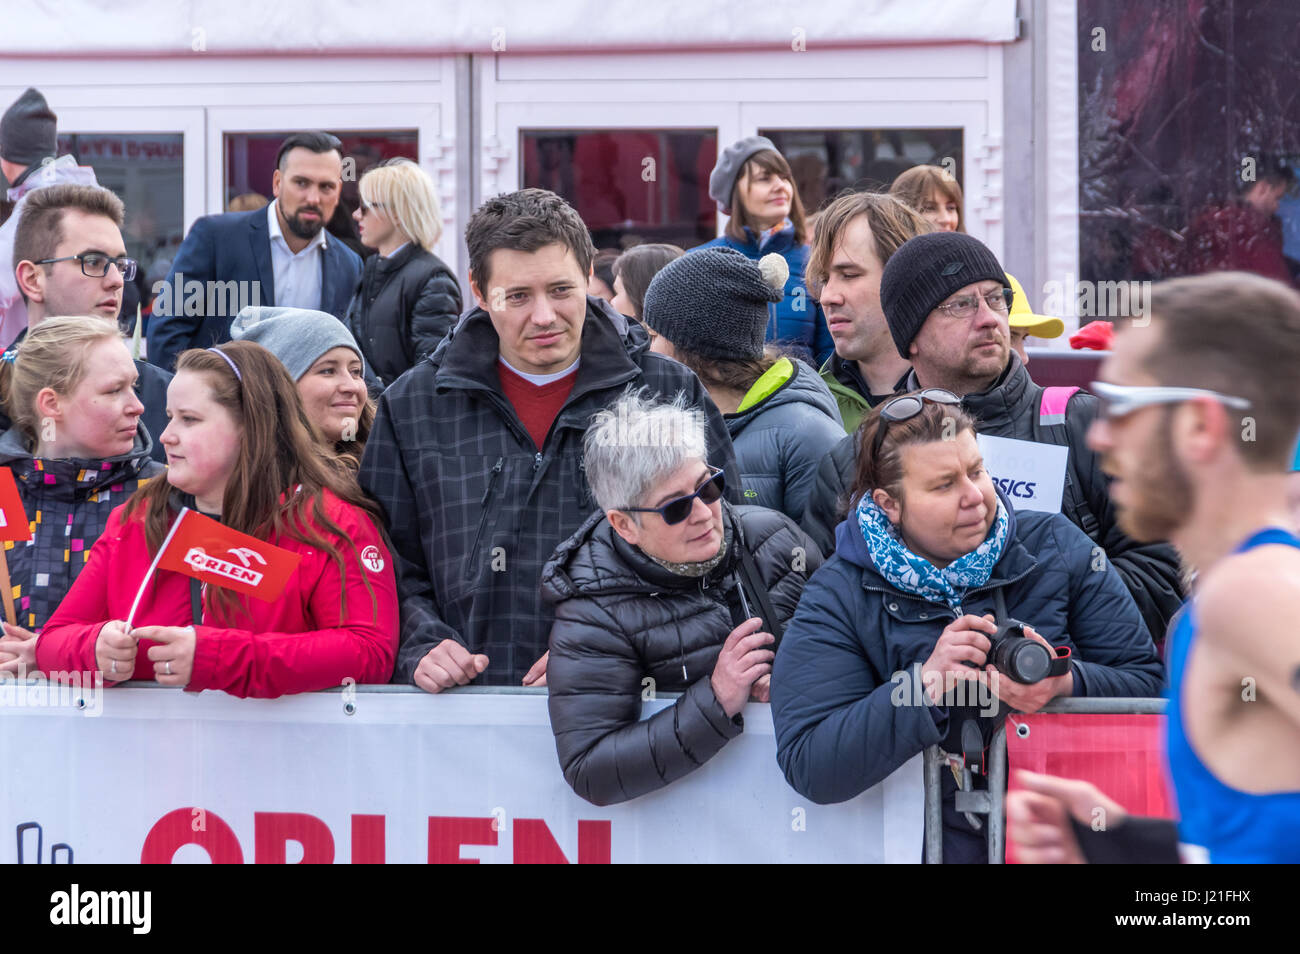 Warschau, Polen. 23. April 2017. OSHEE 10 km Lauf, ein sportliches Ereignis während Warschau Marathon organisiert. Bildnachweis: Dario Fotografie/Alamy Live News Stockfoto